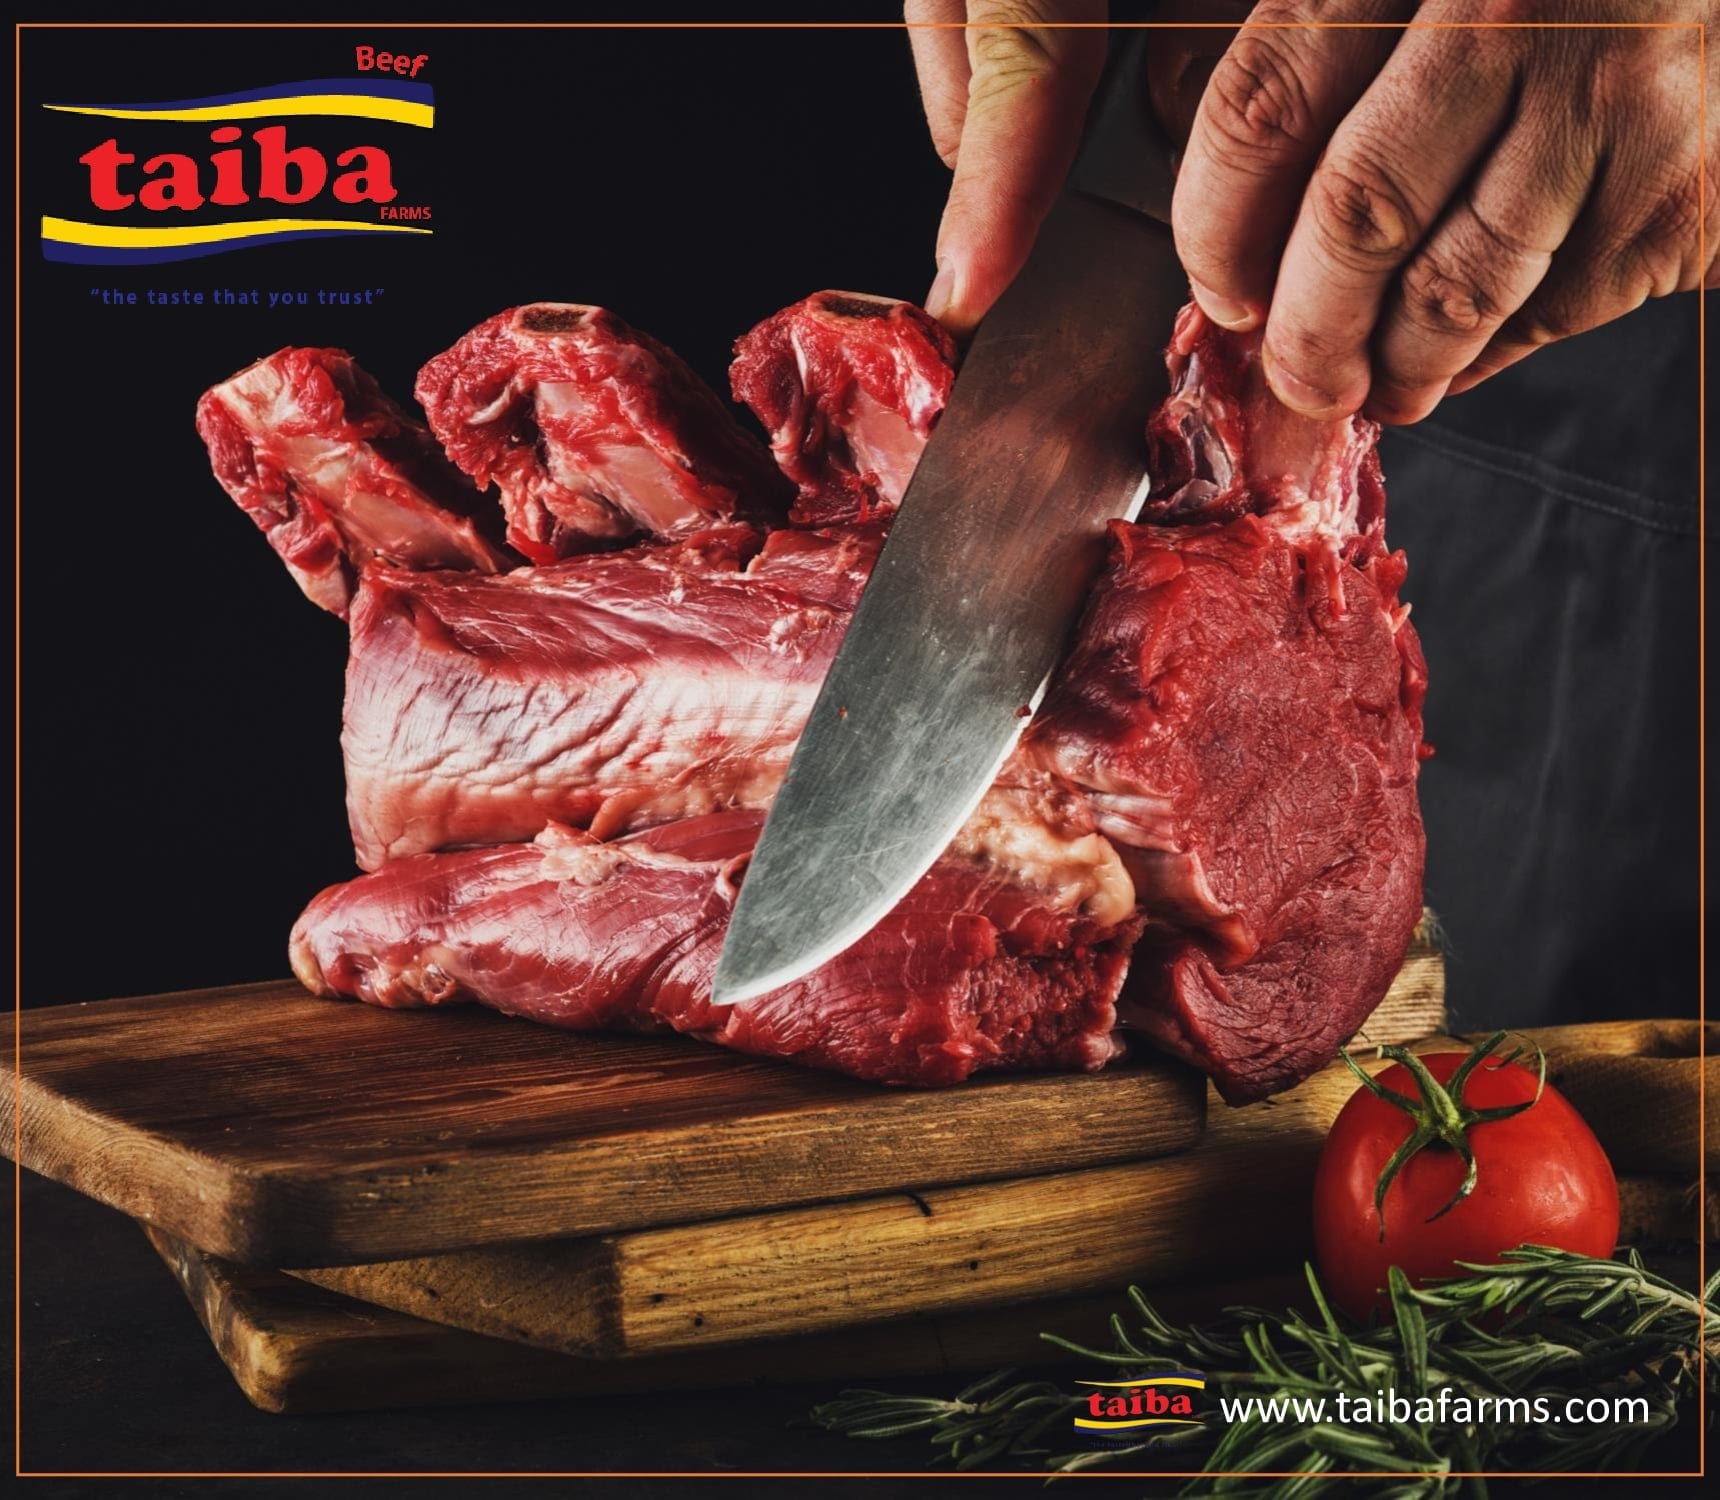 ＃1品質, ハラールビーフ、ハラール肉製品, 冷凍、生鮮、冷蔵, 卸売業者、サプライヤー、生産者 ブラジルで